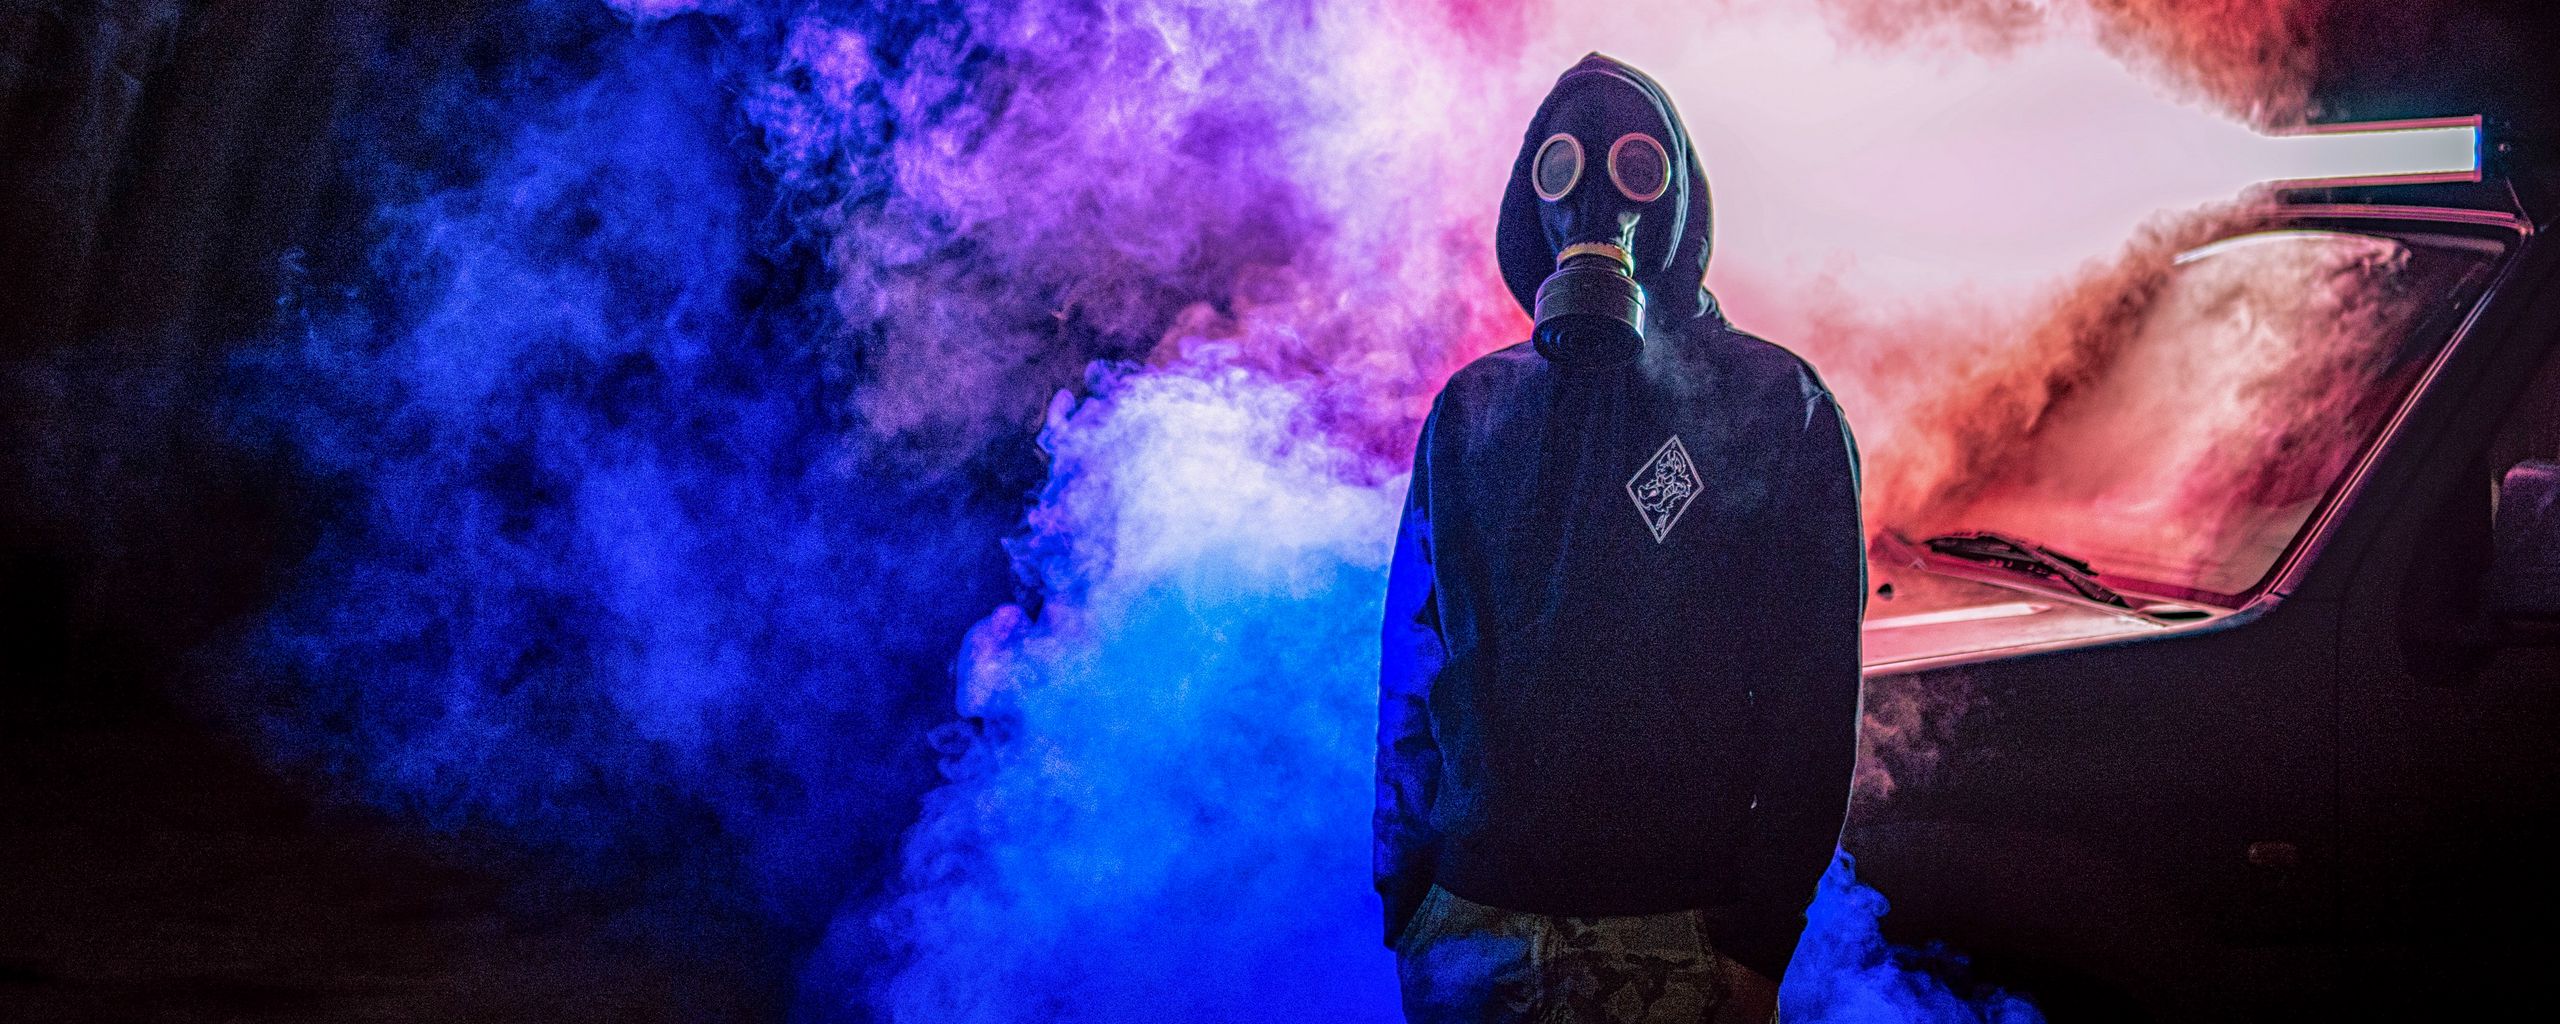 2560x1024 Wallpaper gas mask, man, smoke, colorful